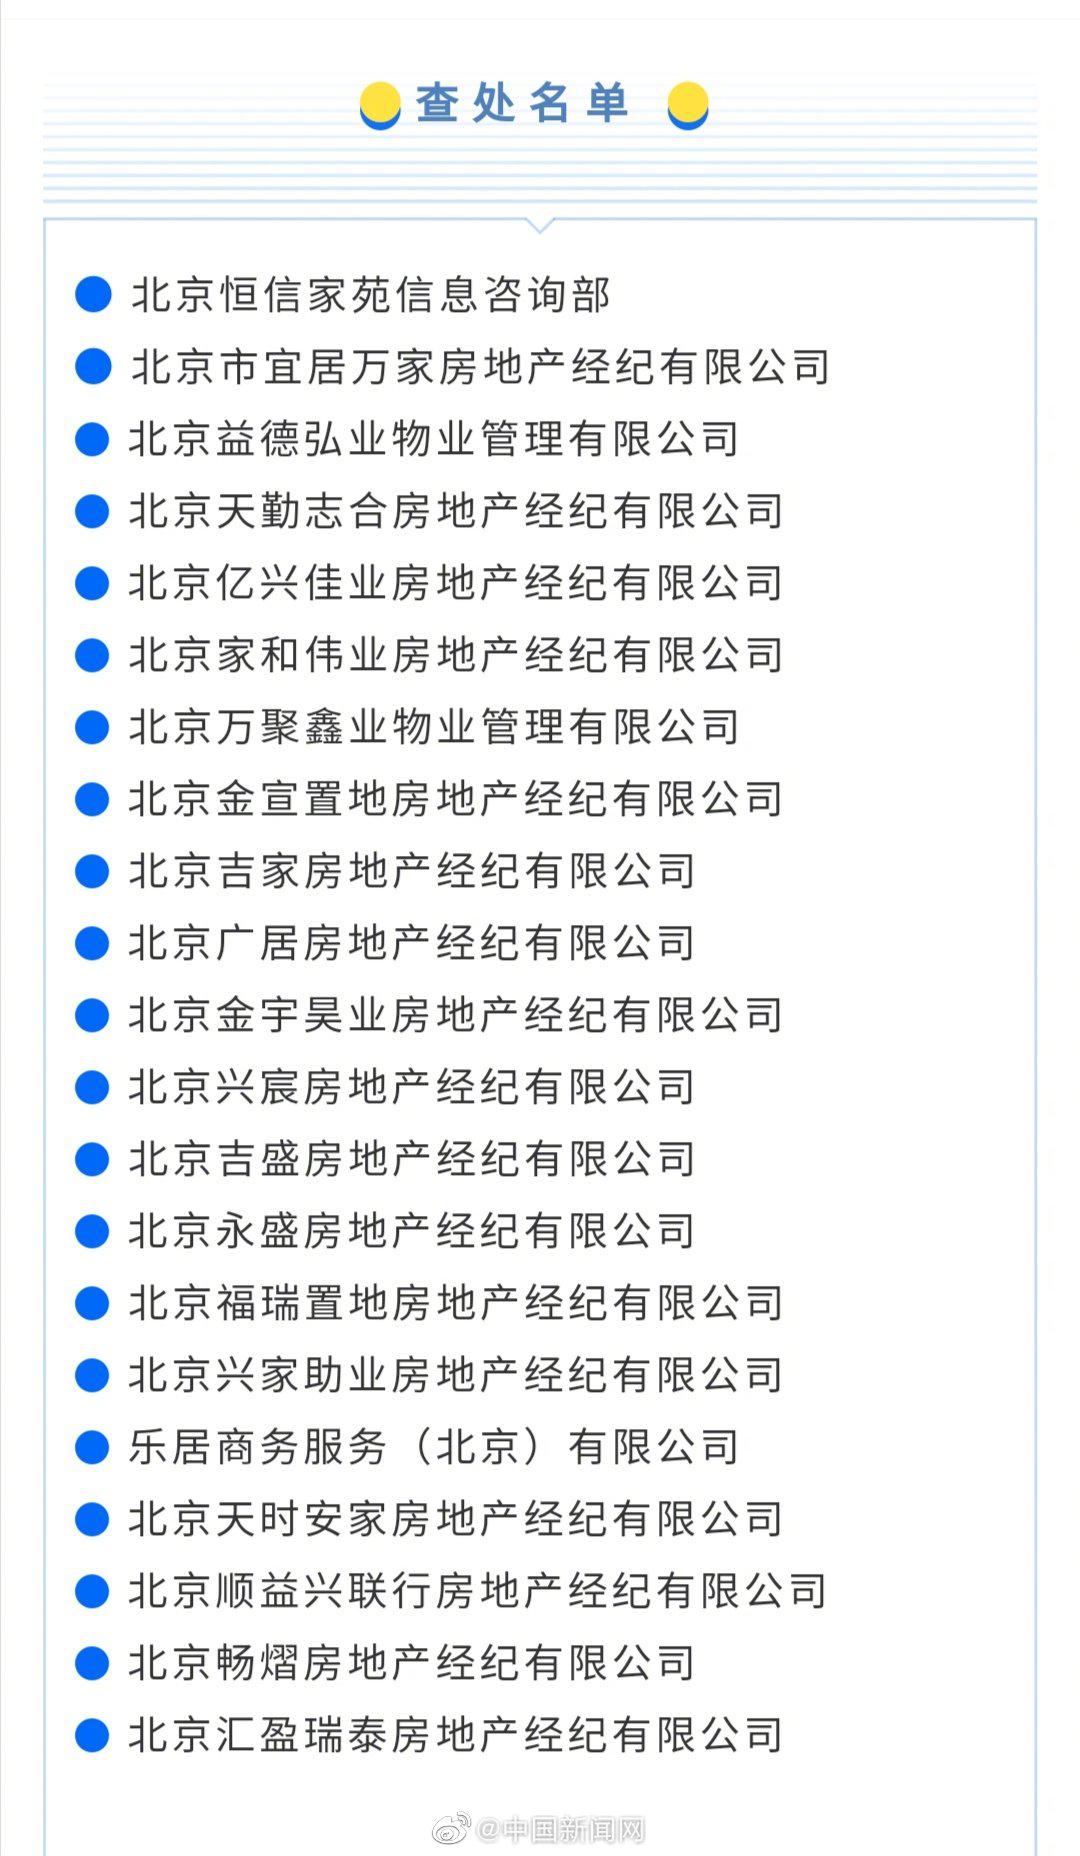 北京严查违规发布房源信息行为 21家房地产经纪机构被查处